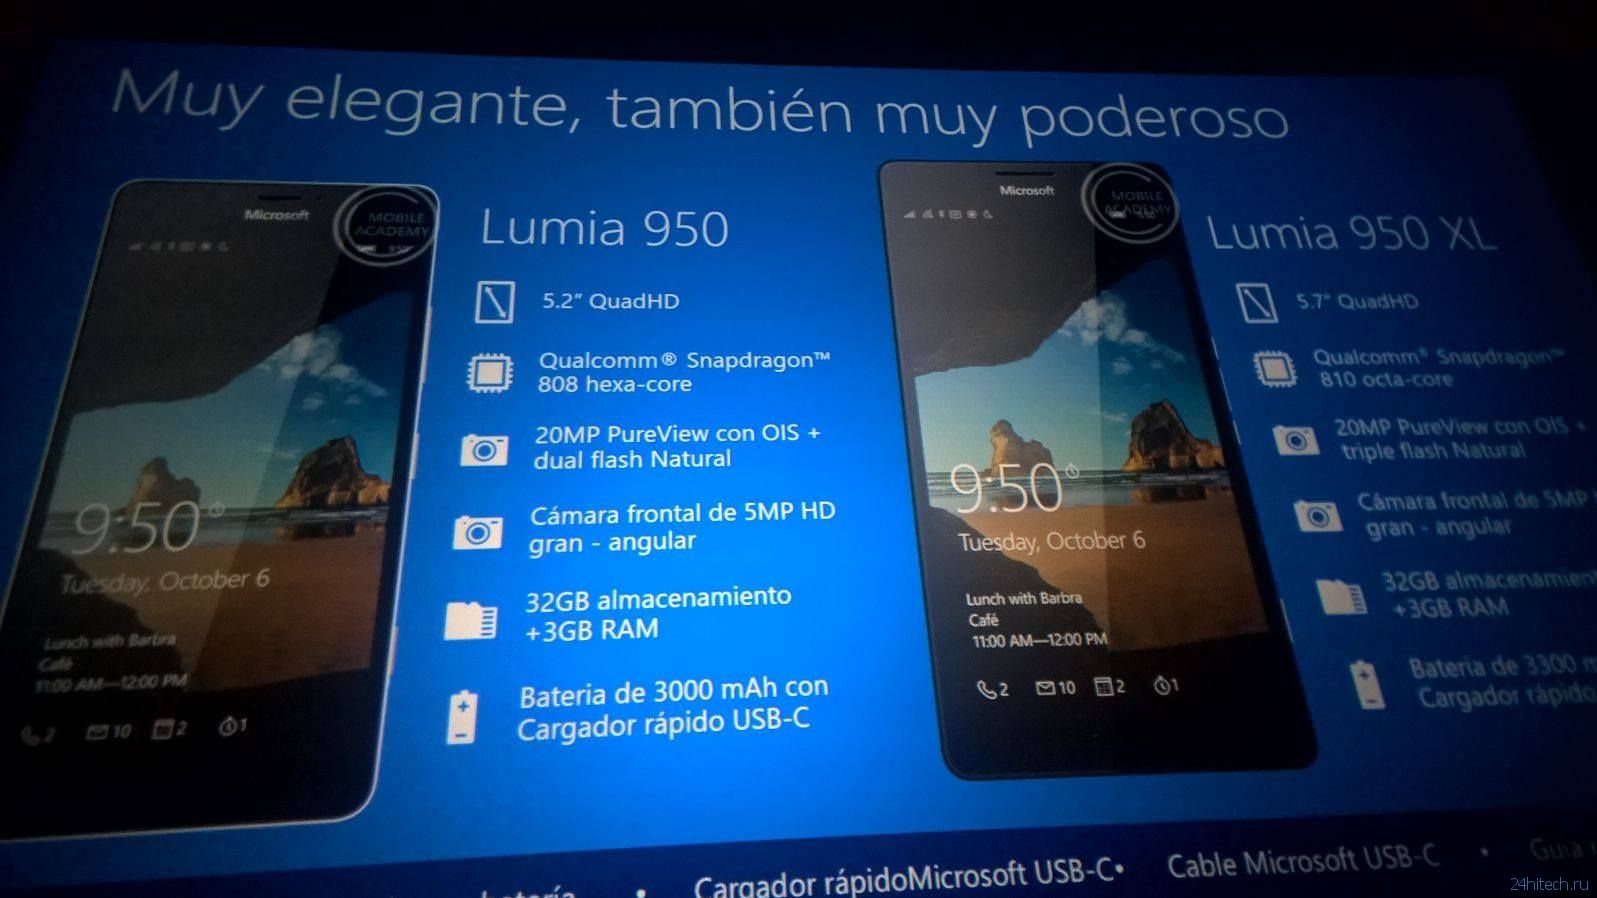 В сеть попали новые изображения Lumia 950 и Lumia 950 XL, технические характеристики подтверждены